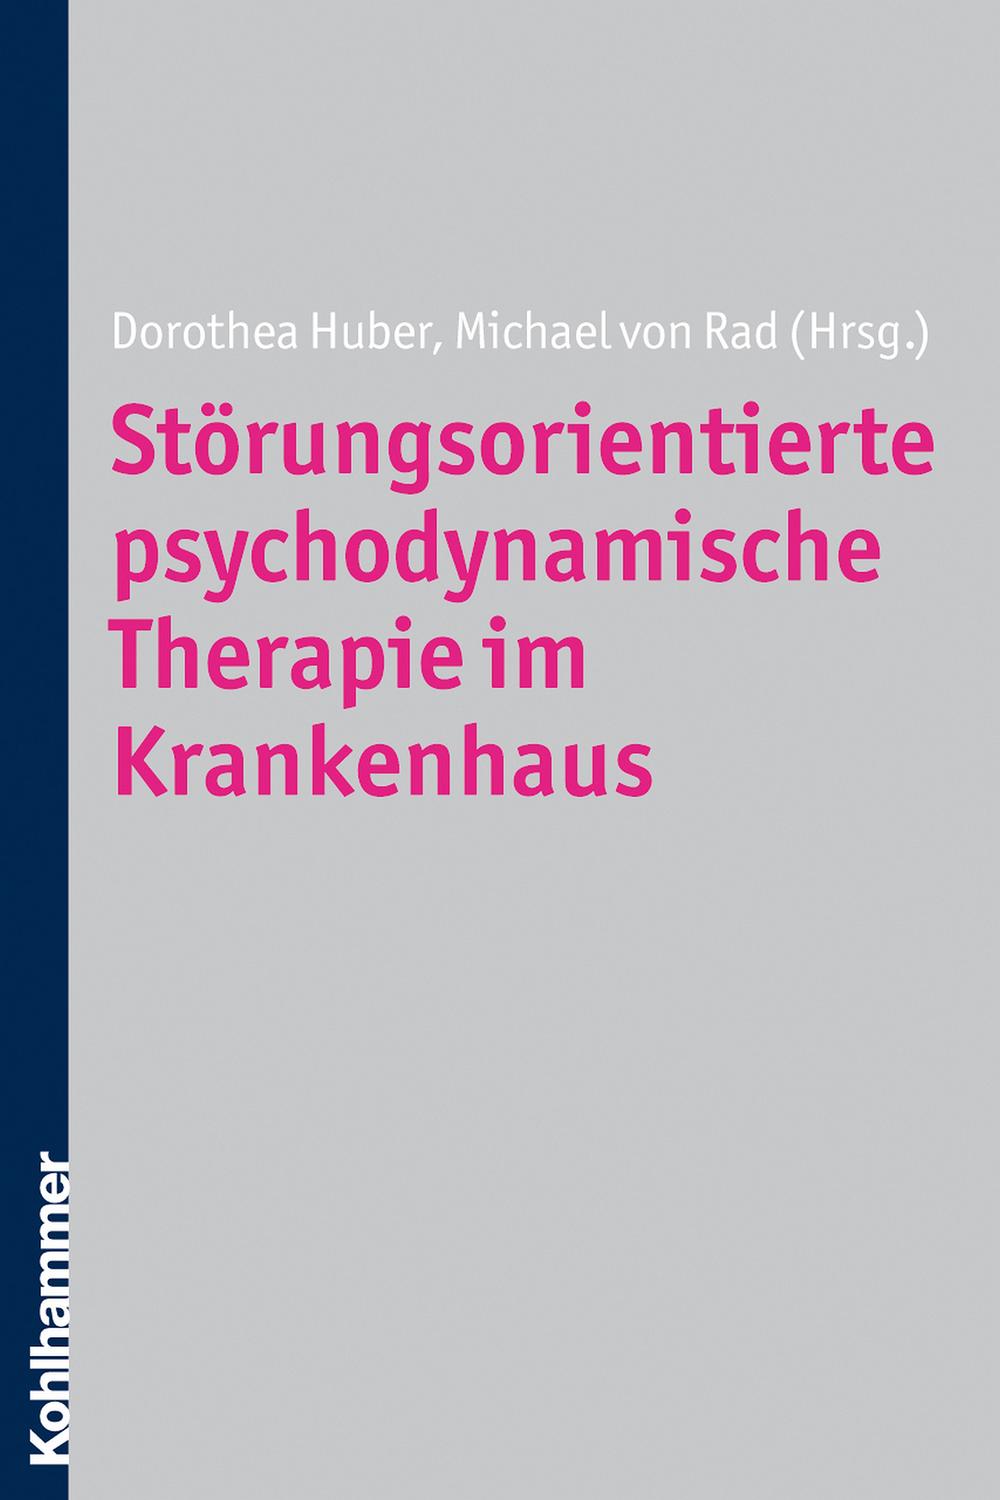 Störungsorientierte psychodynamische Therapie im Krankenhaus - Dorothea Huber, Michael von Rad